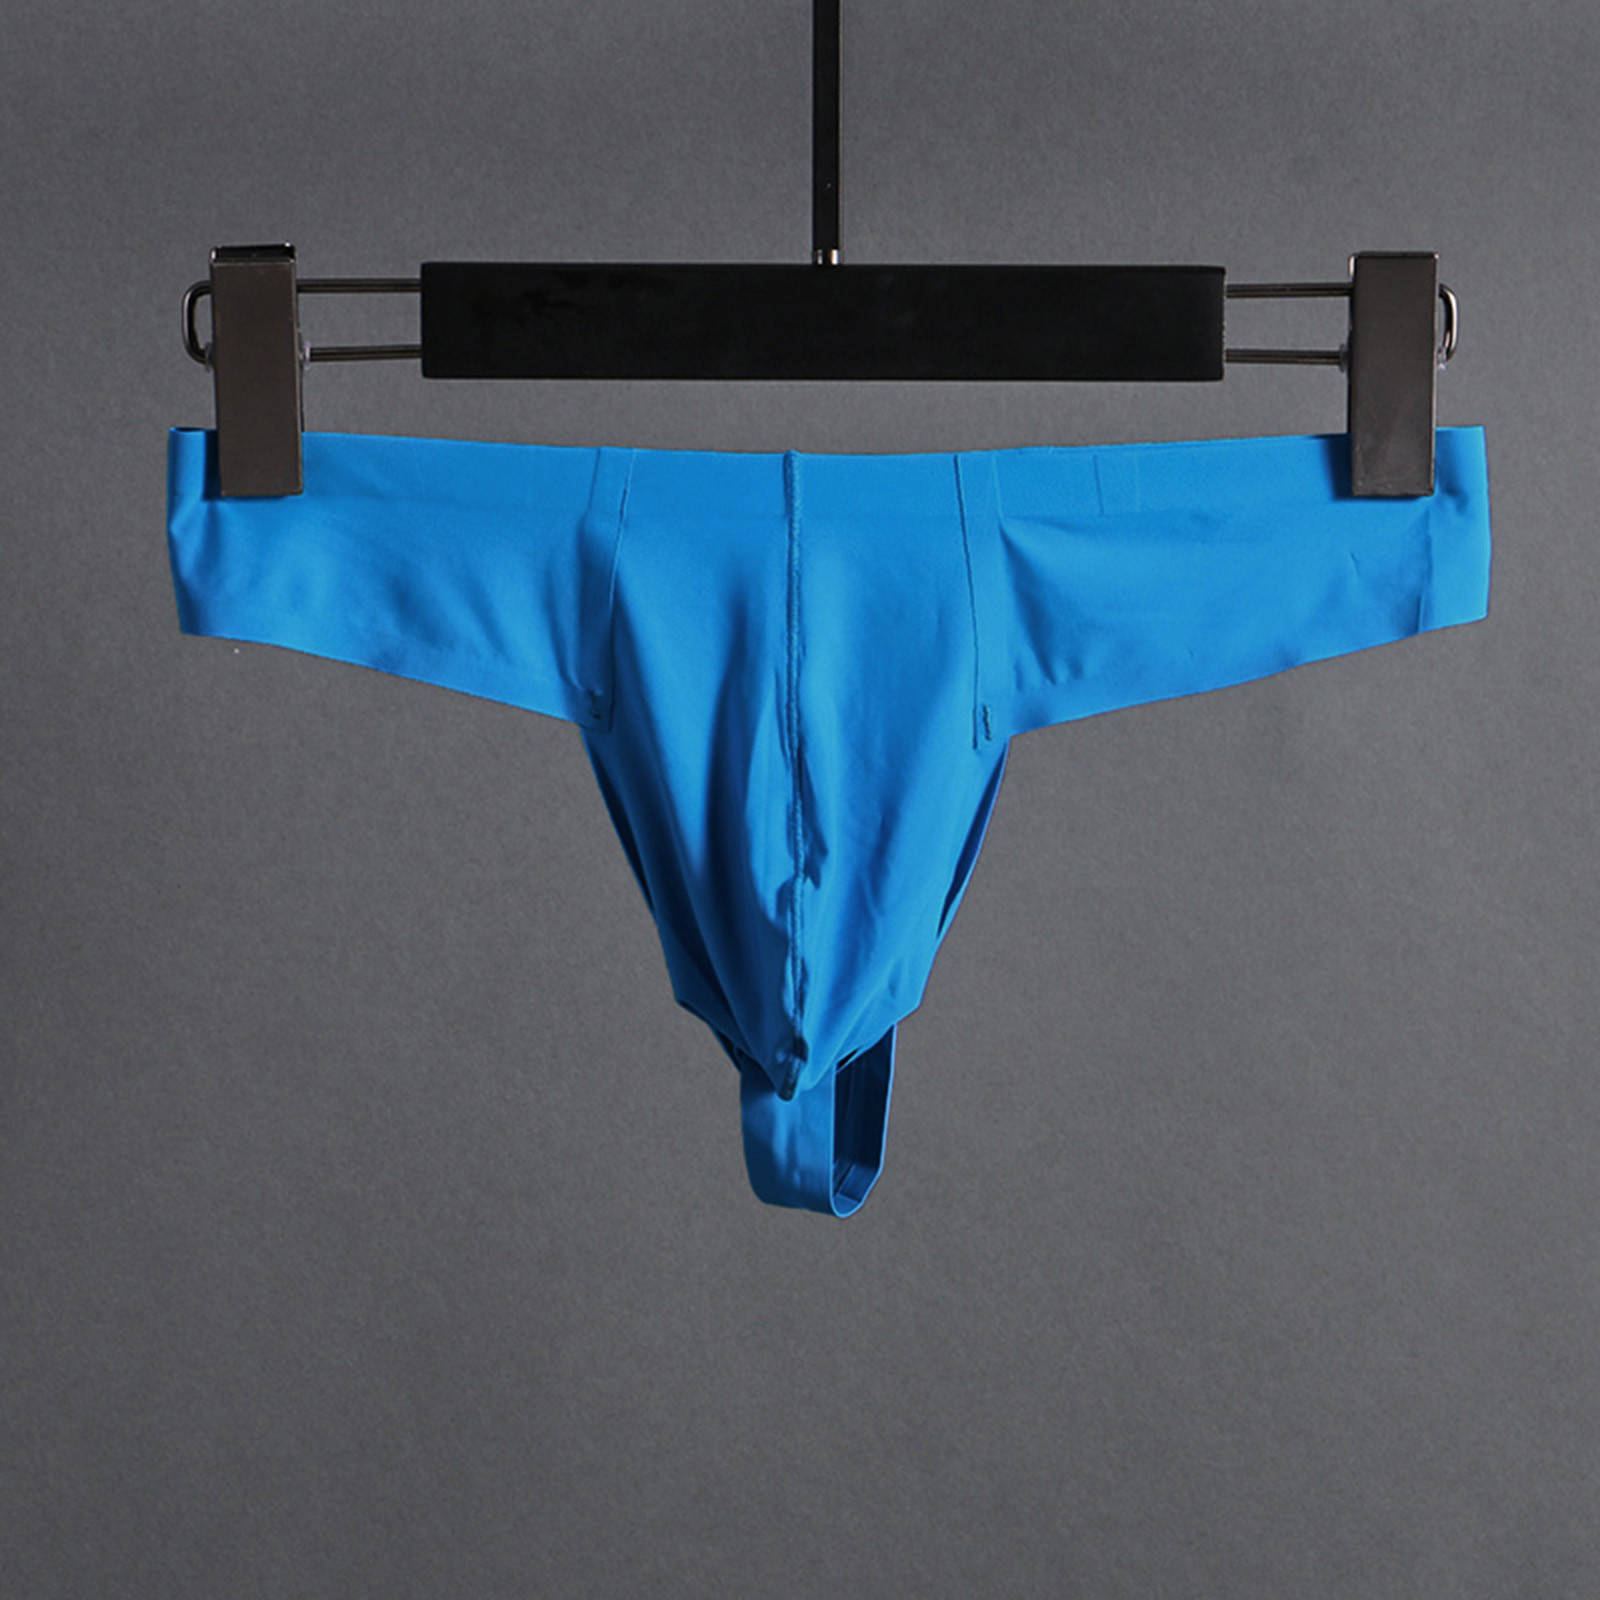 Zuwimk Mens Underwear Thong,Men's Camouflage Thong Underwear Low Rise T-back Underwear Sky Blue,M - image 5 of 5